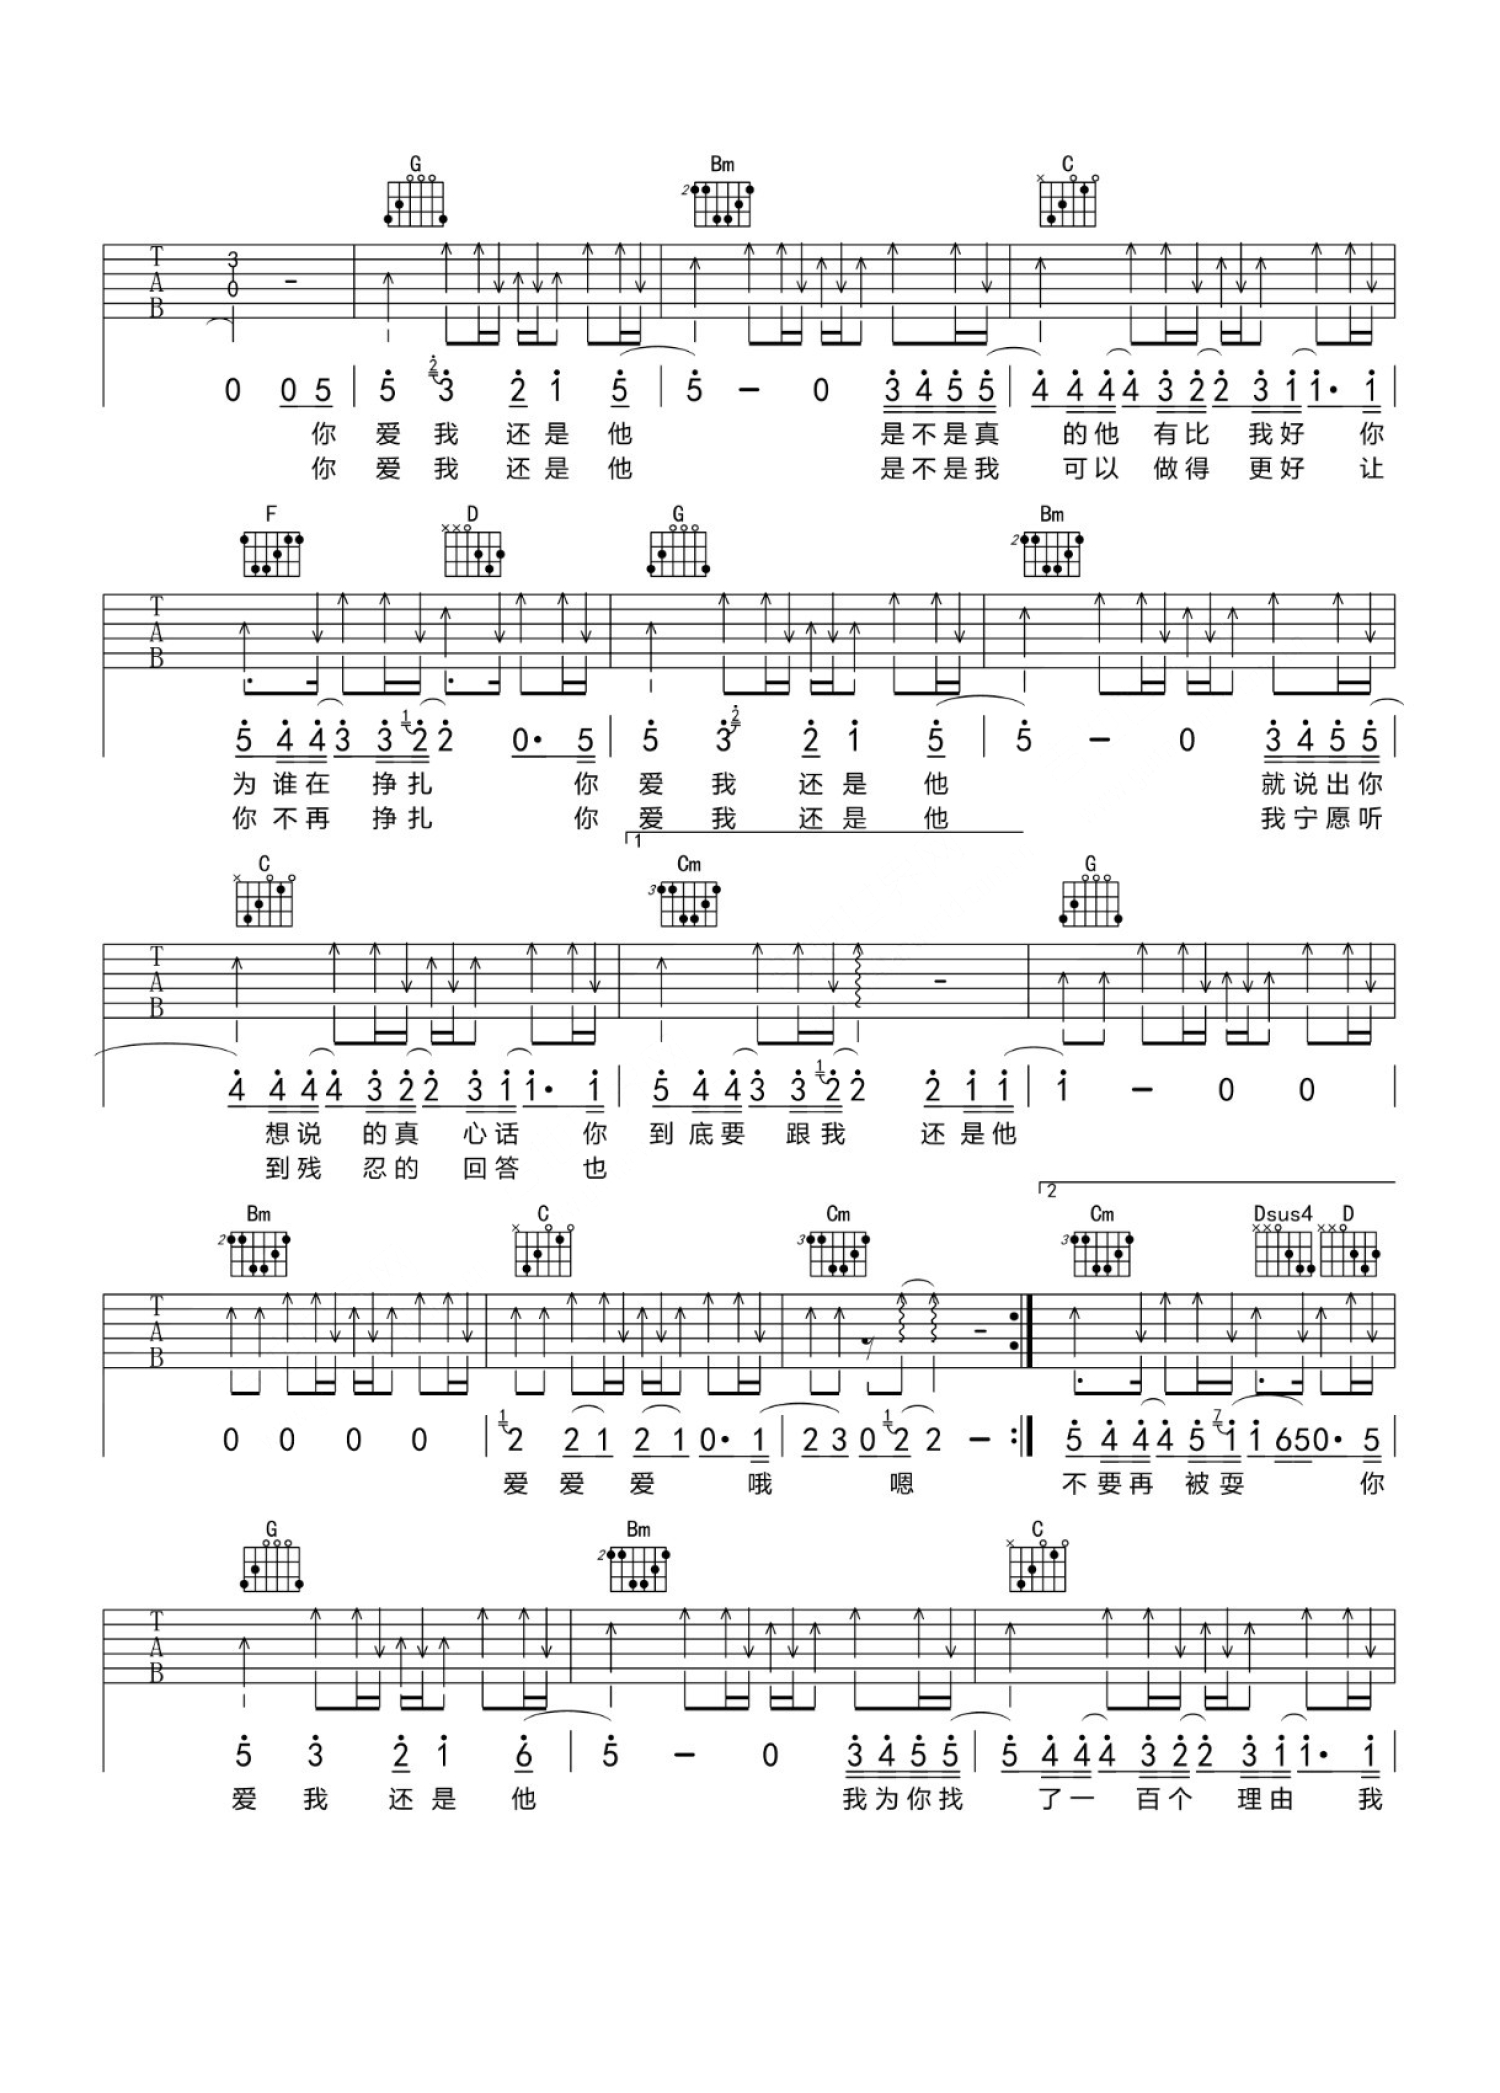 陶喆《爱我还是他》吉他谱(G调)-Guitar Music Score - GTP吉他谱